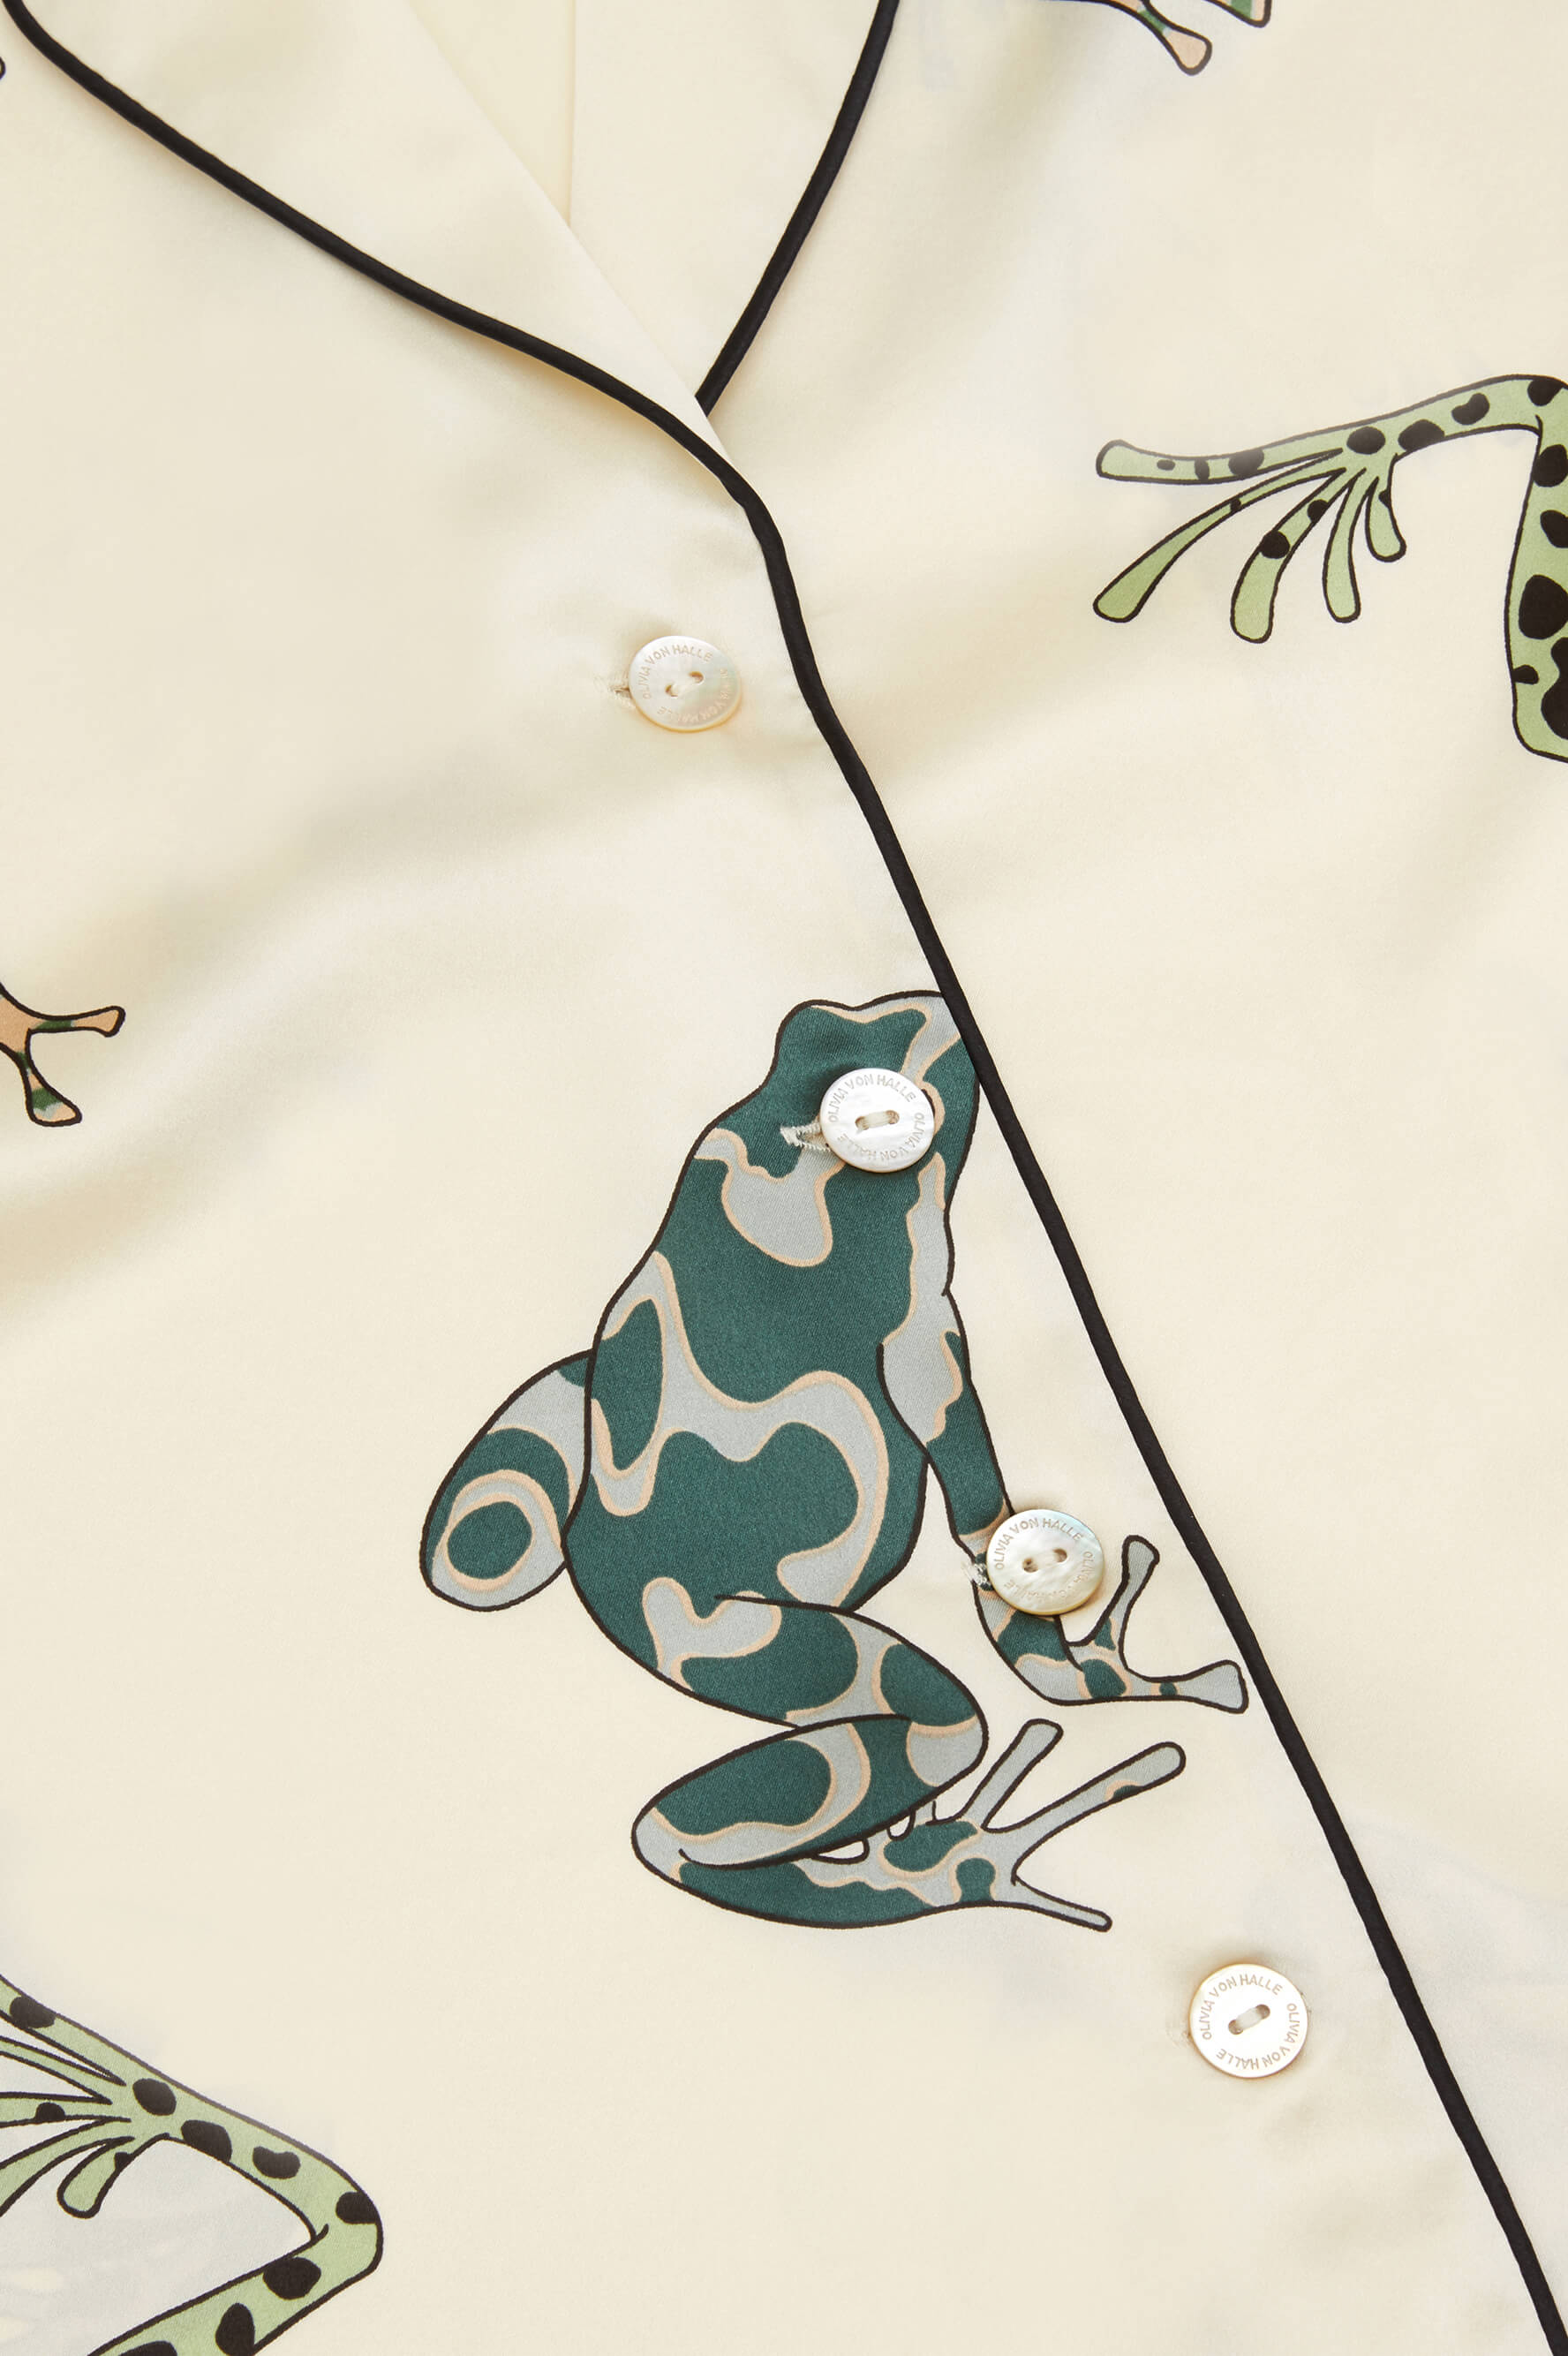 Lila Lumi Ivory Frog Silk Satin Pajamas